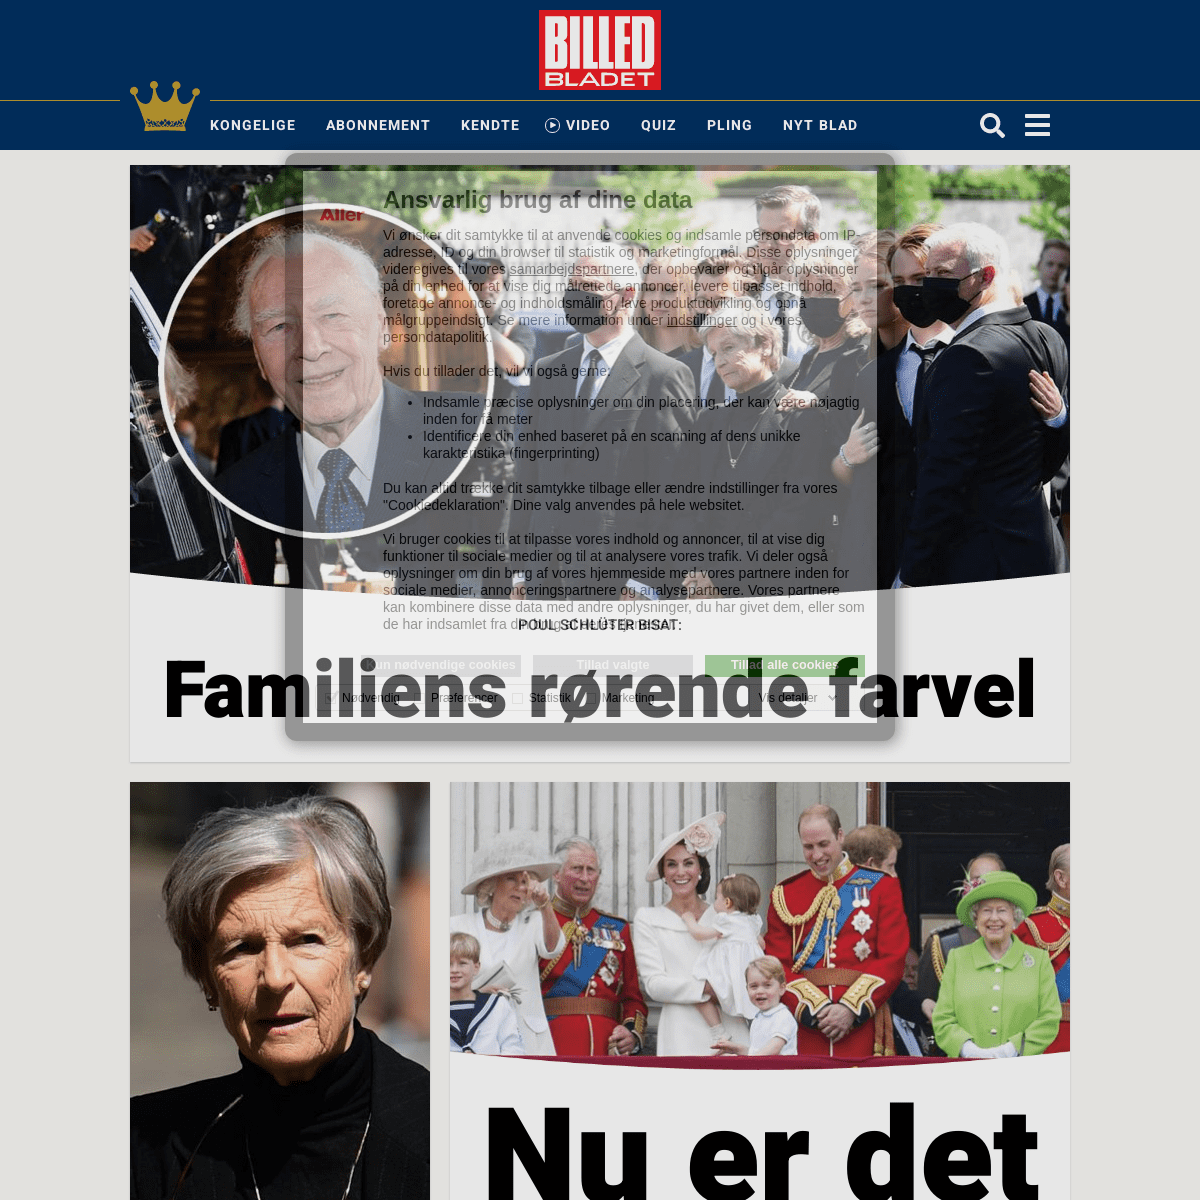 A complete backup of https://billedbladet.dk